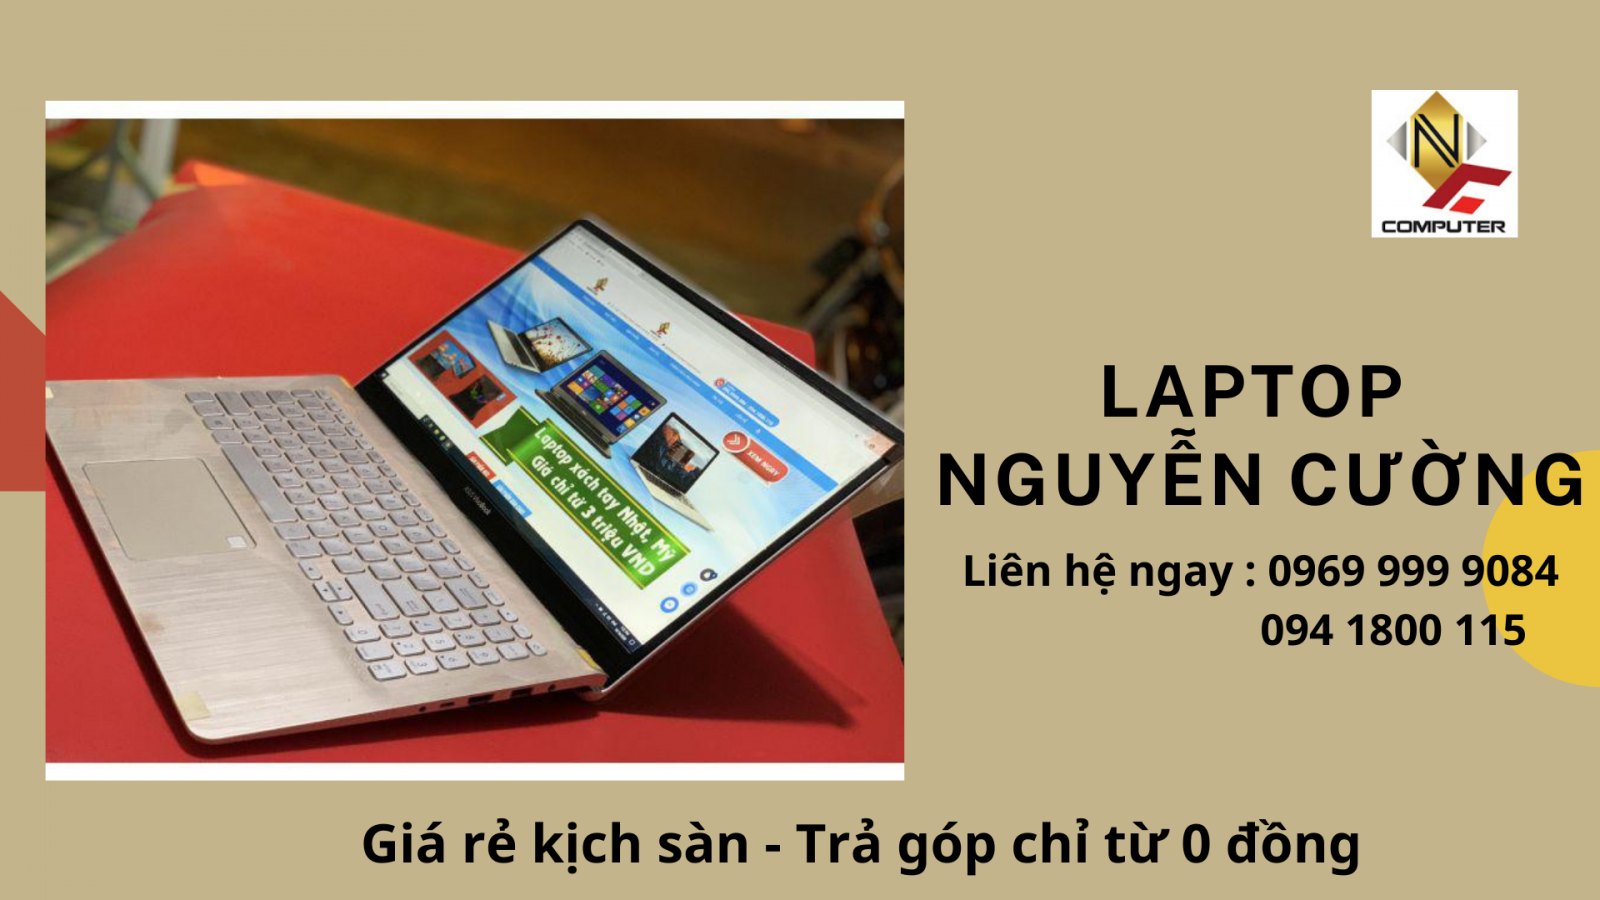 Laptop trả góp - Nguyễn Cường